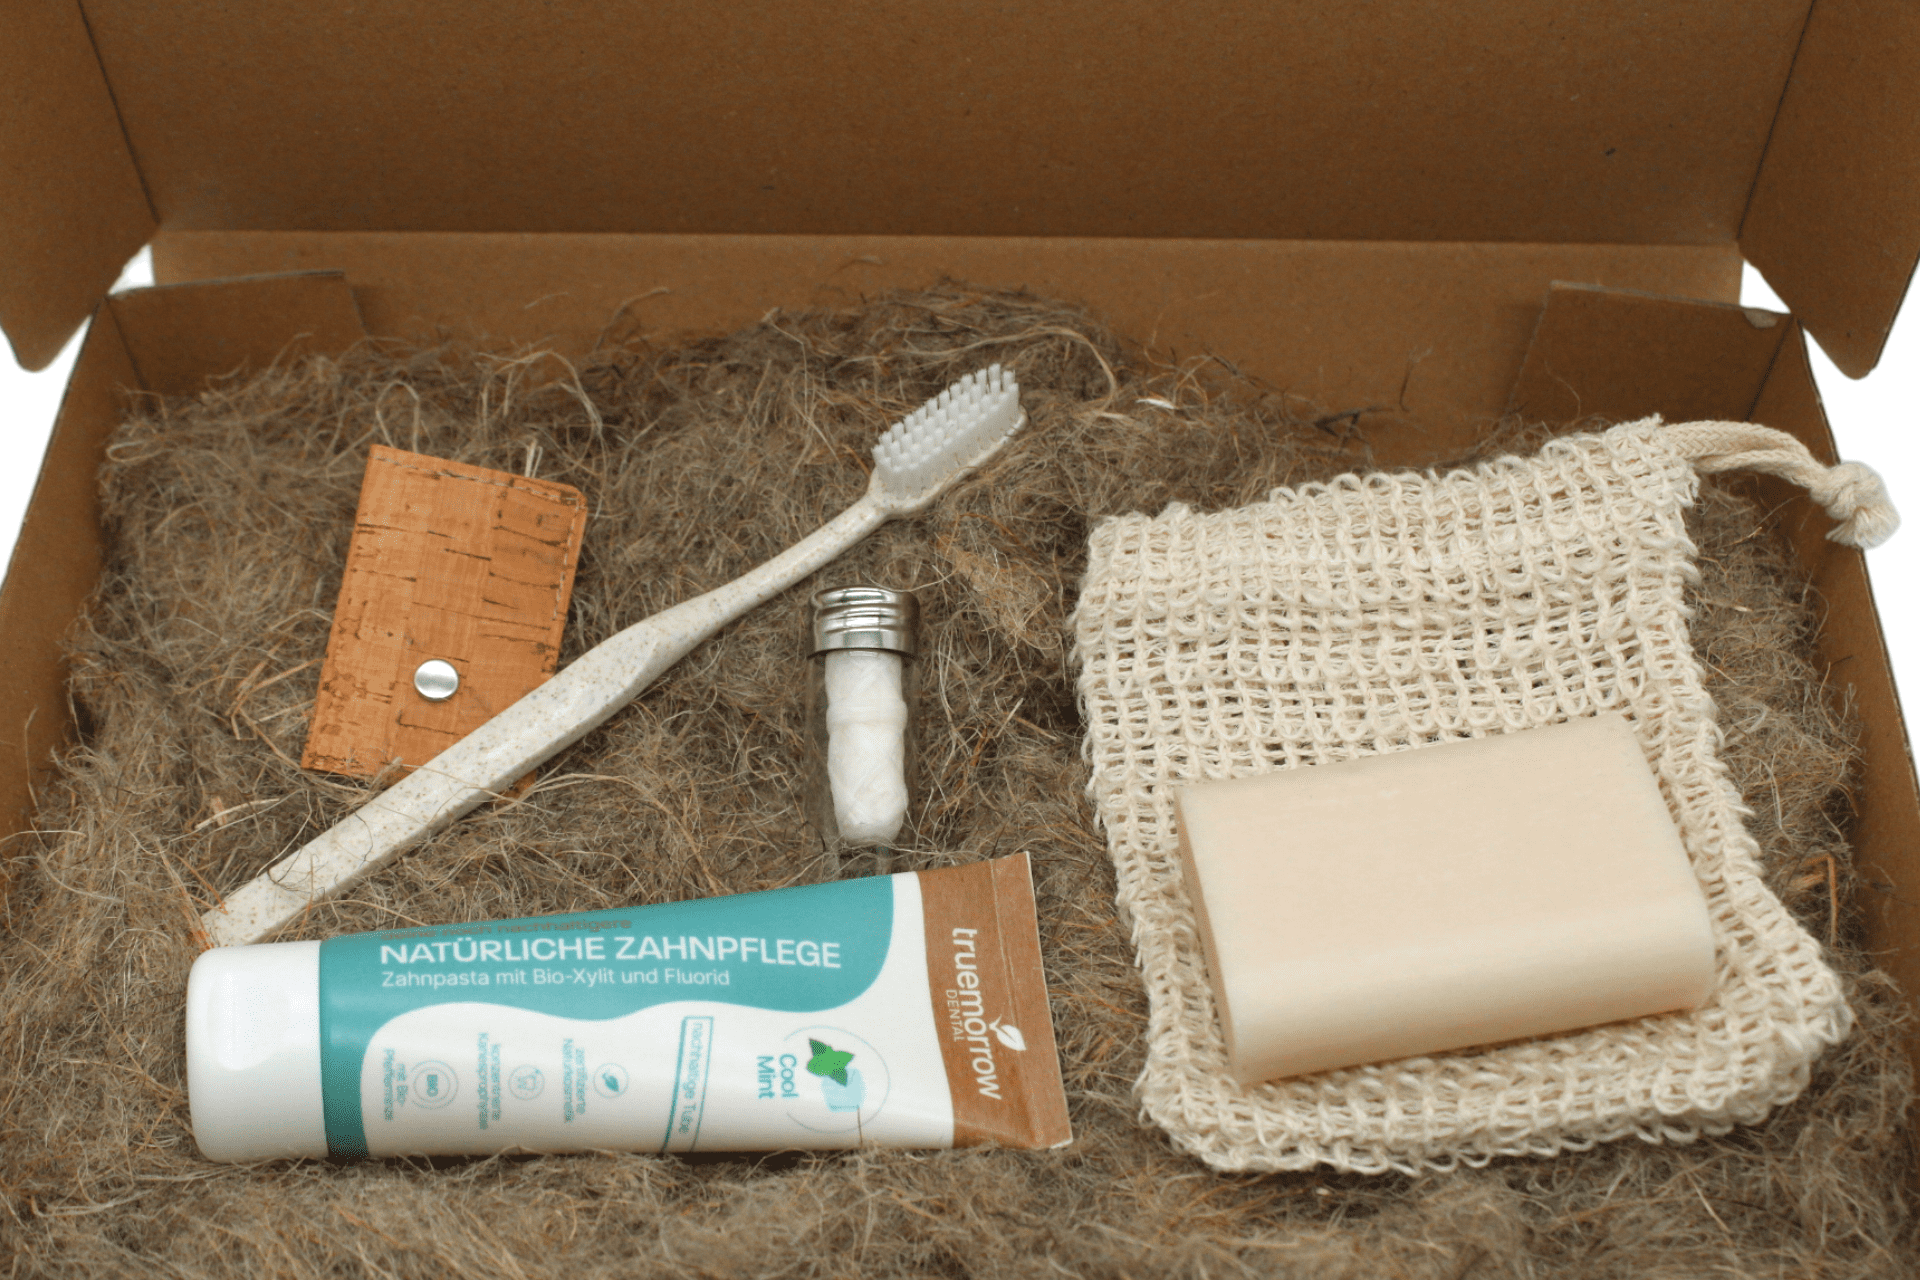 Zero Waste Kit platziert in Karton mit Hanfwolle